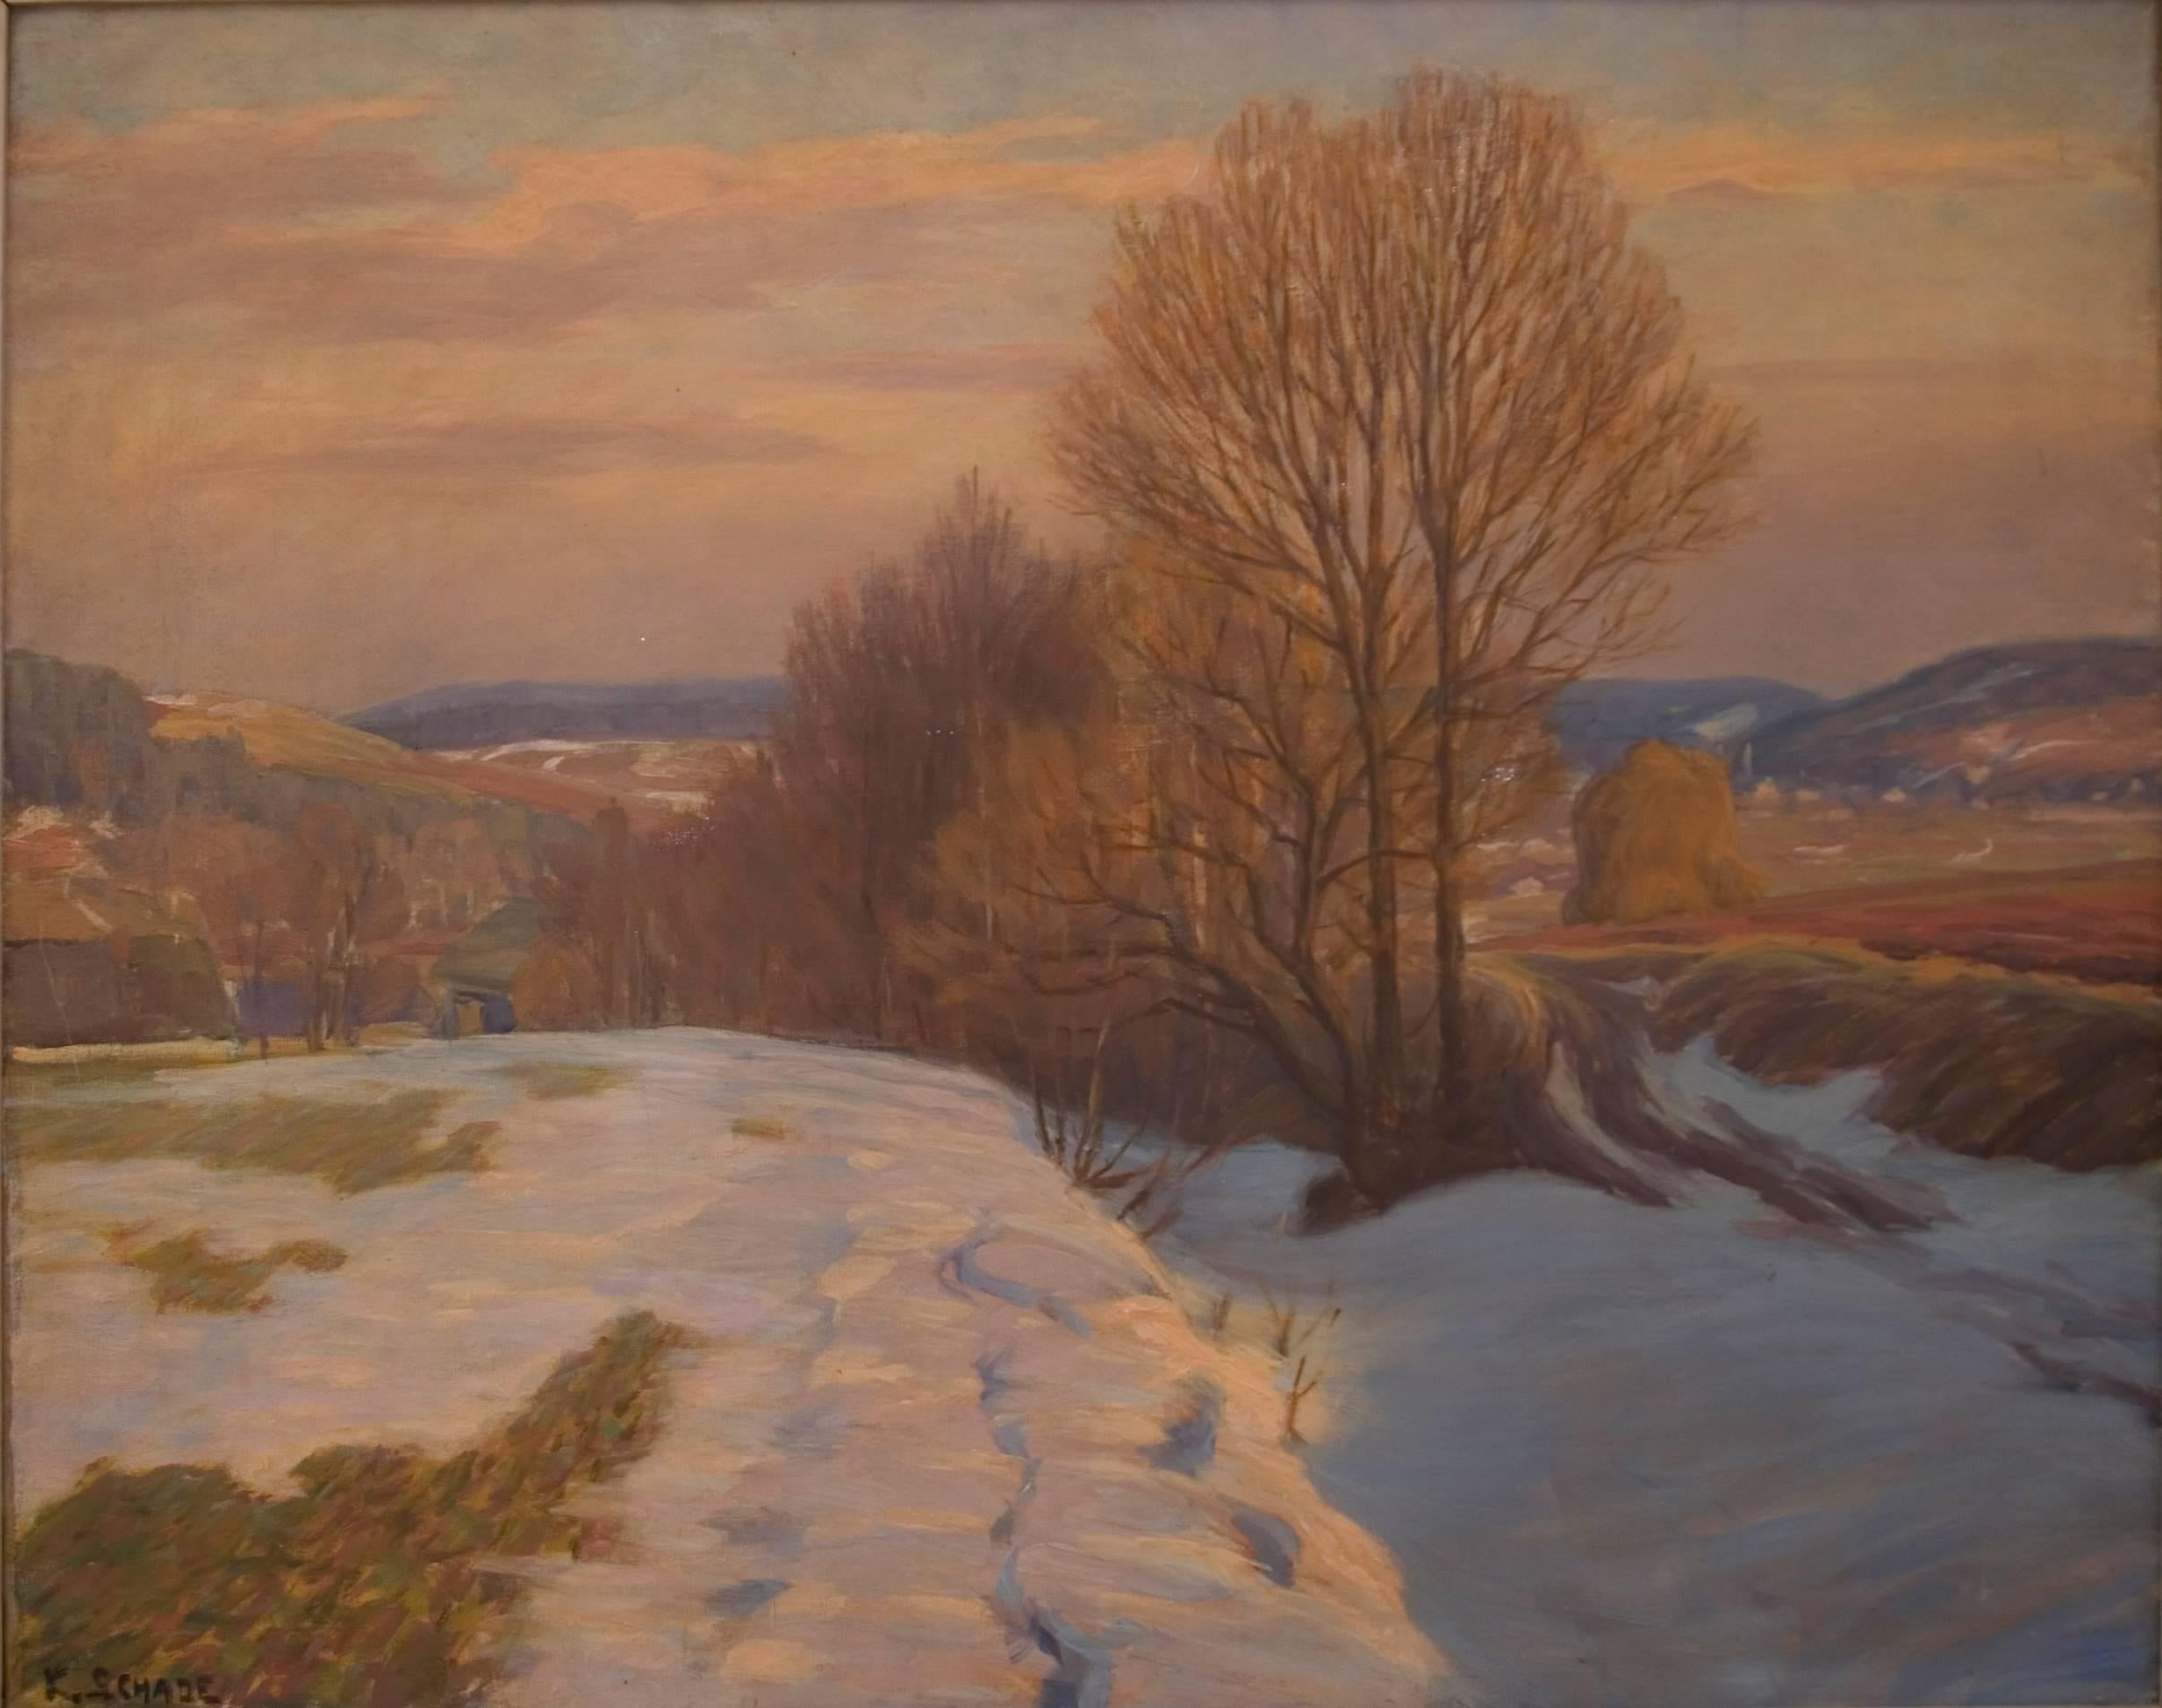 Karl Schade Landscape Painting - Vorfrühling (Early Spring) - Oil, Canvas, Landscape, Realism, Rural, Warm Tones